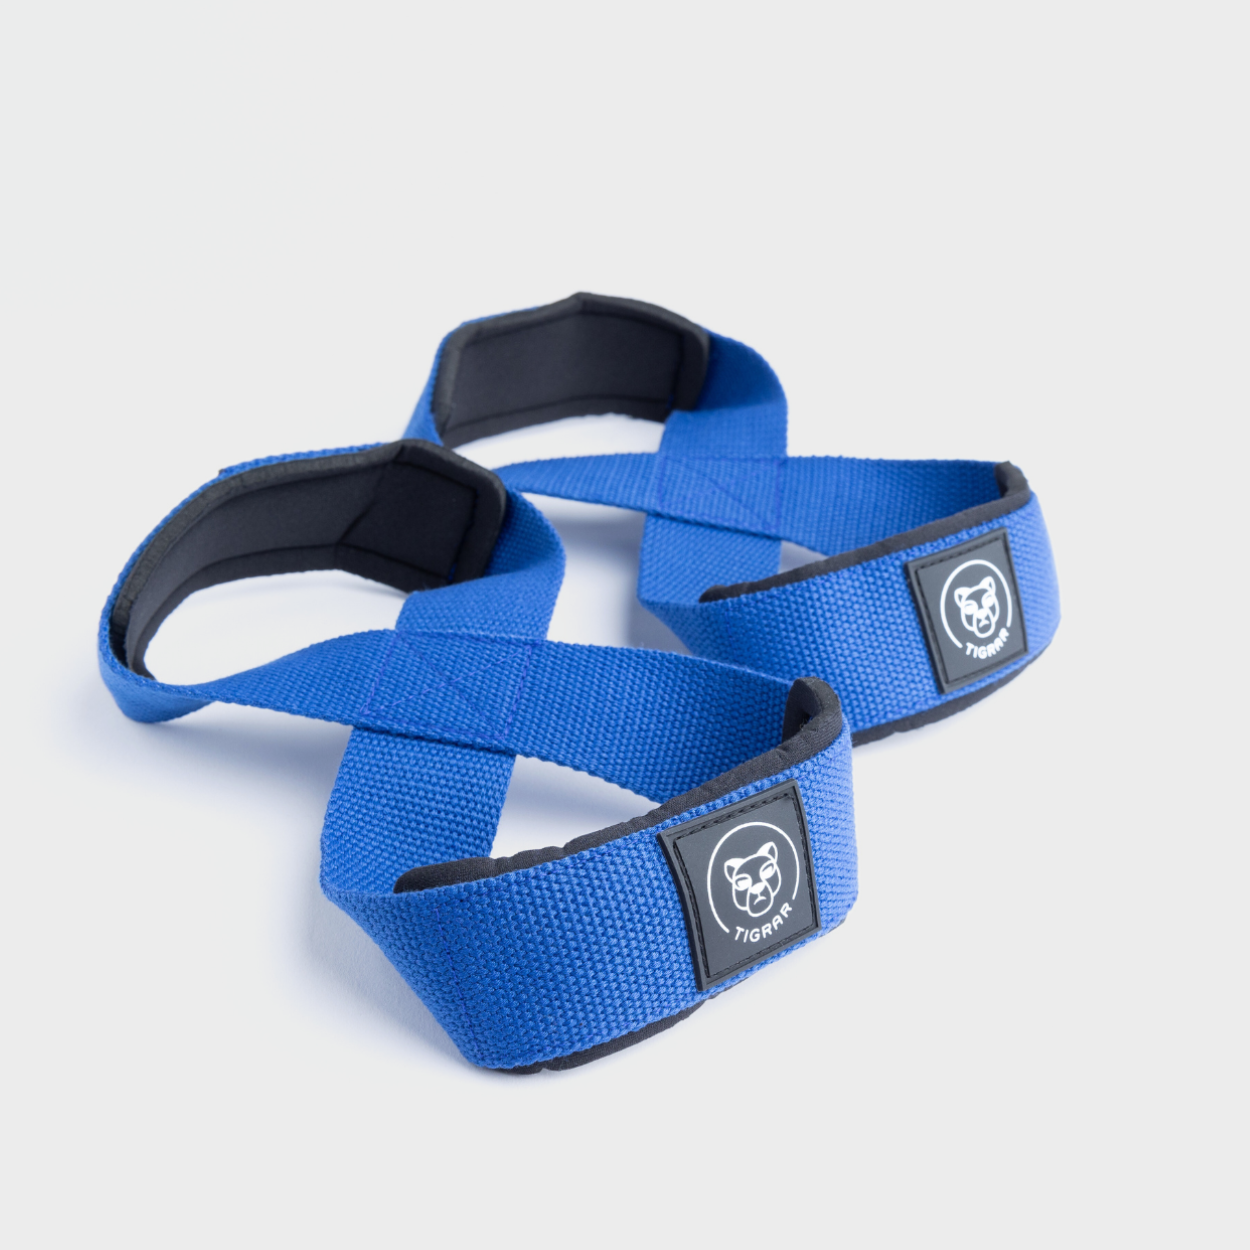 Blauwe Tigrar Figure 8 lifting straps, ontworpen voor maximale ondersteuning, tegen een grijze achtergrond.